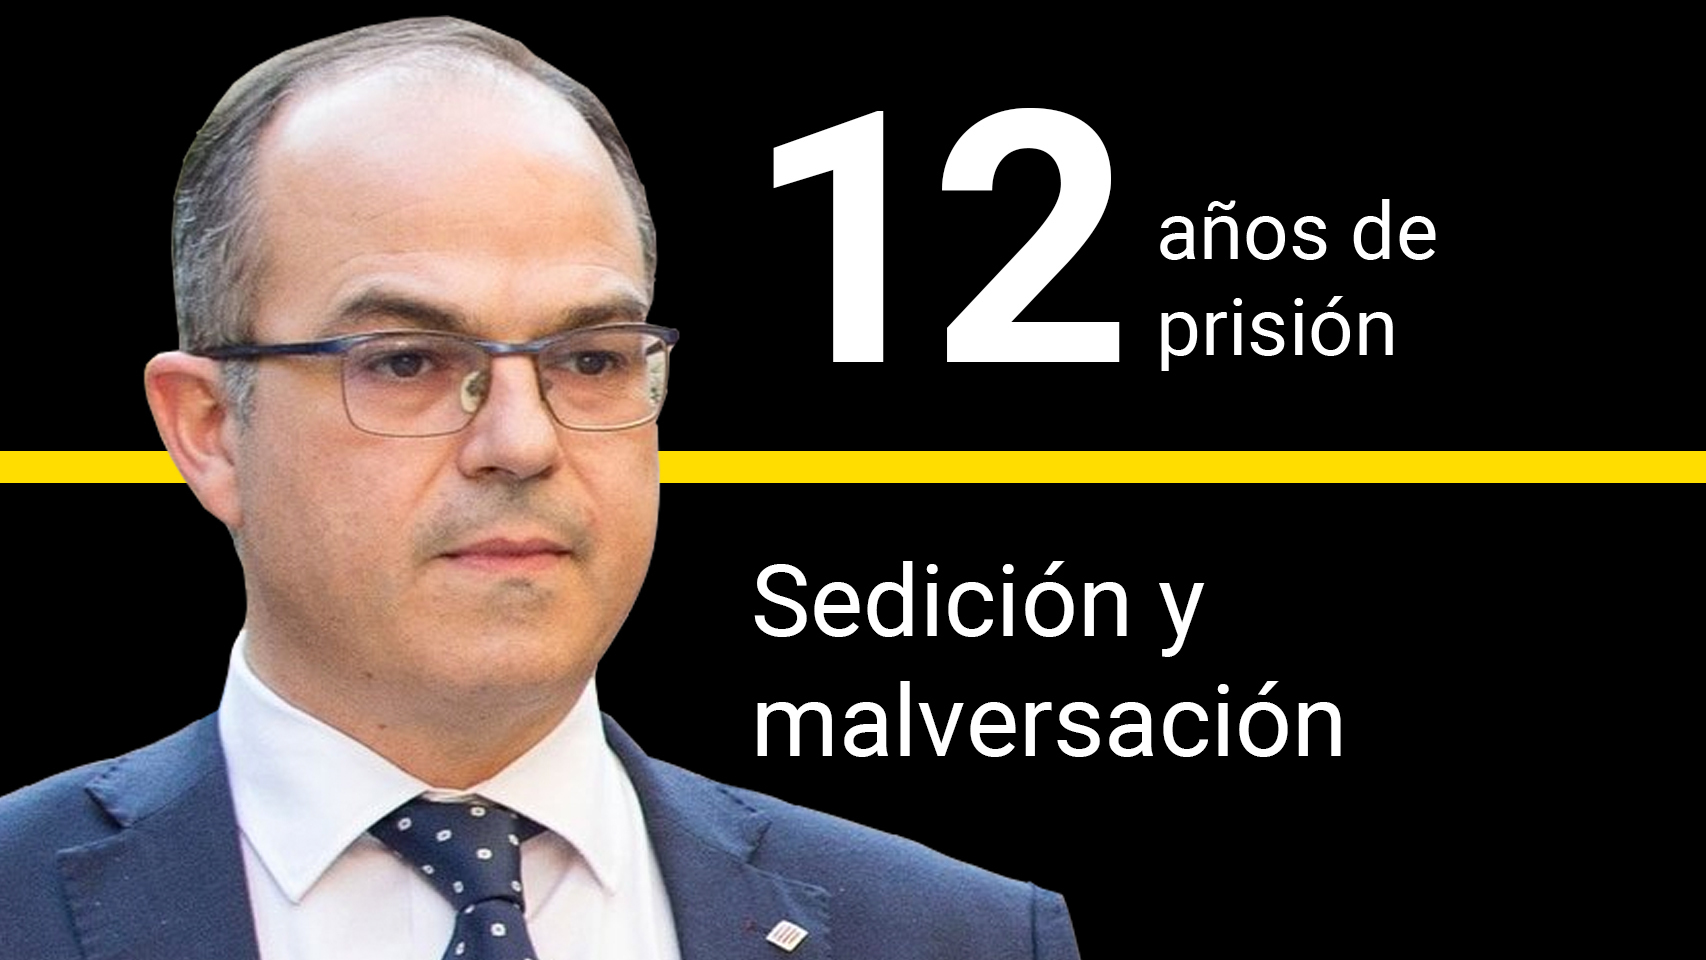 Jordi Turull, condenado a 12 años de prisión por sedición y malversación